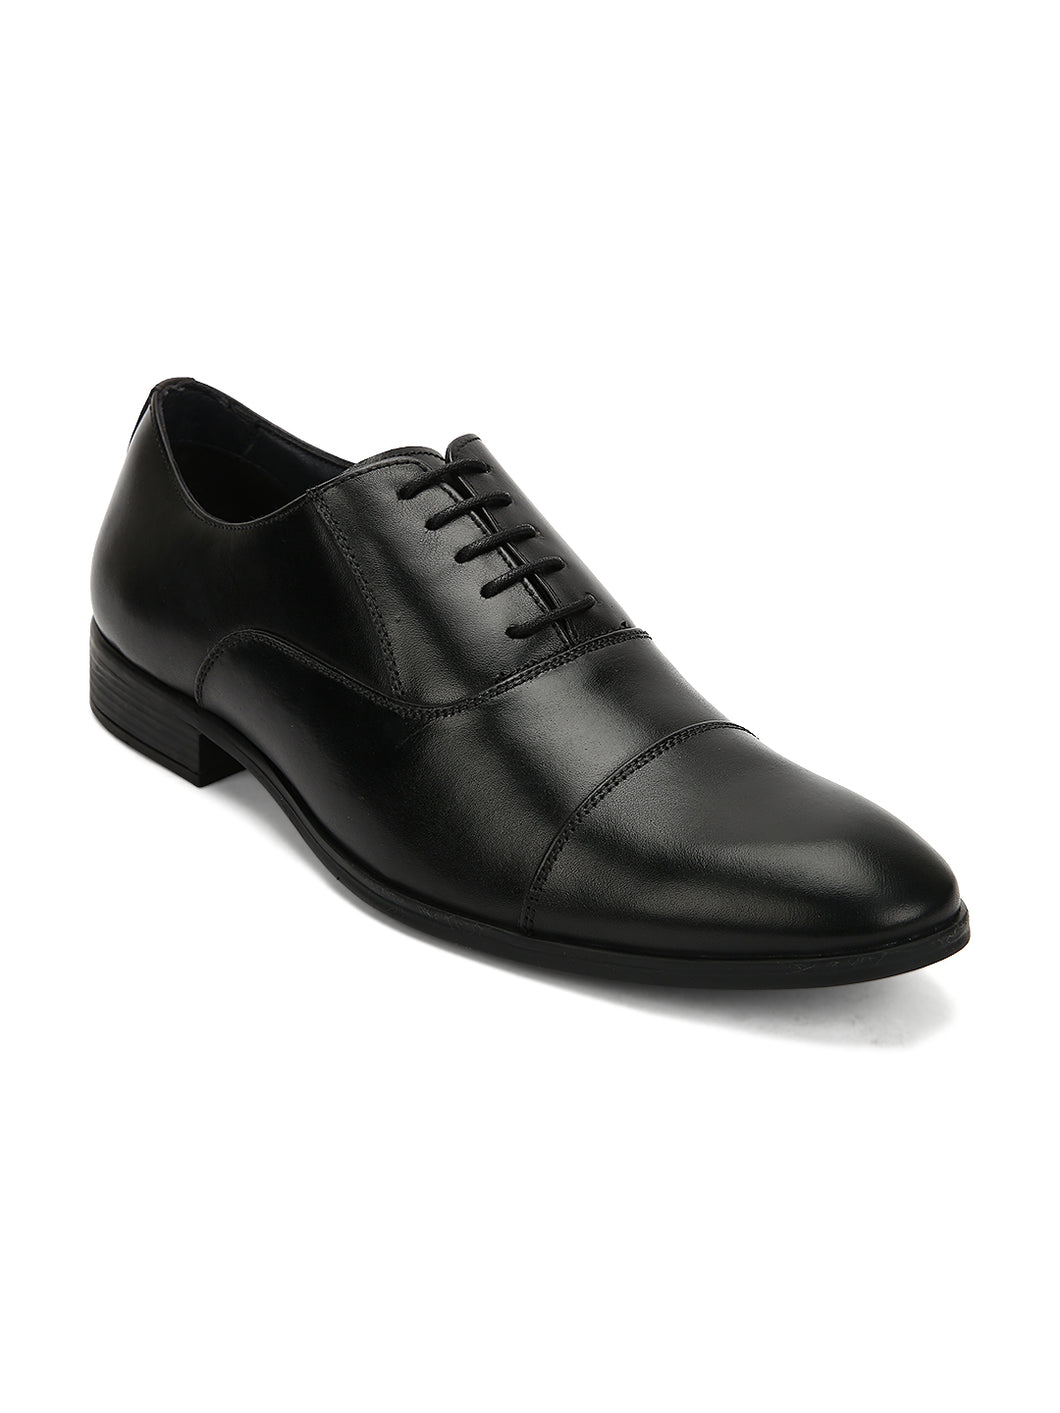 Teakwood Men Genuine Leather Formal Derby Shoes